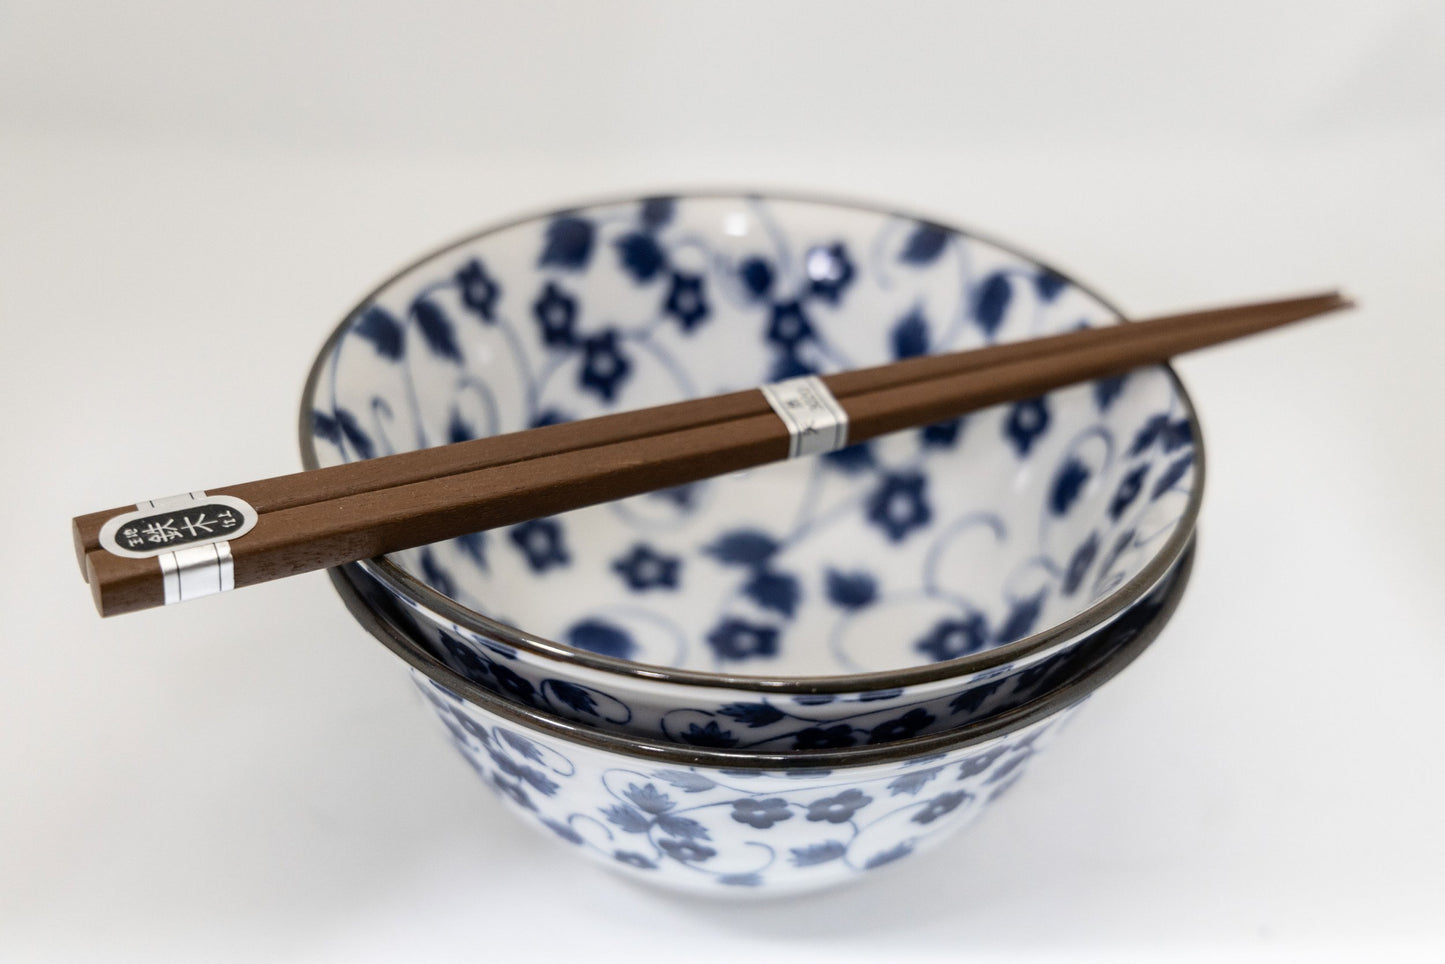 Japanese Bowl Set & Chopsticks - White & Blue